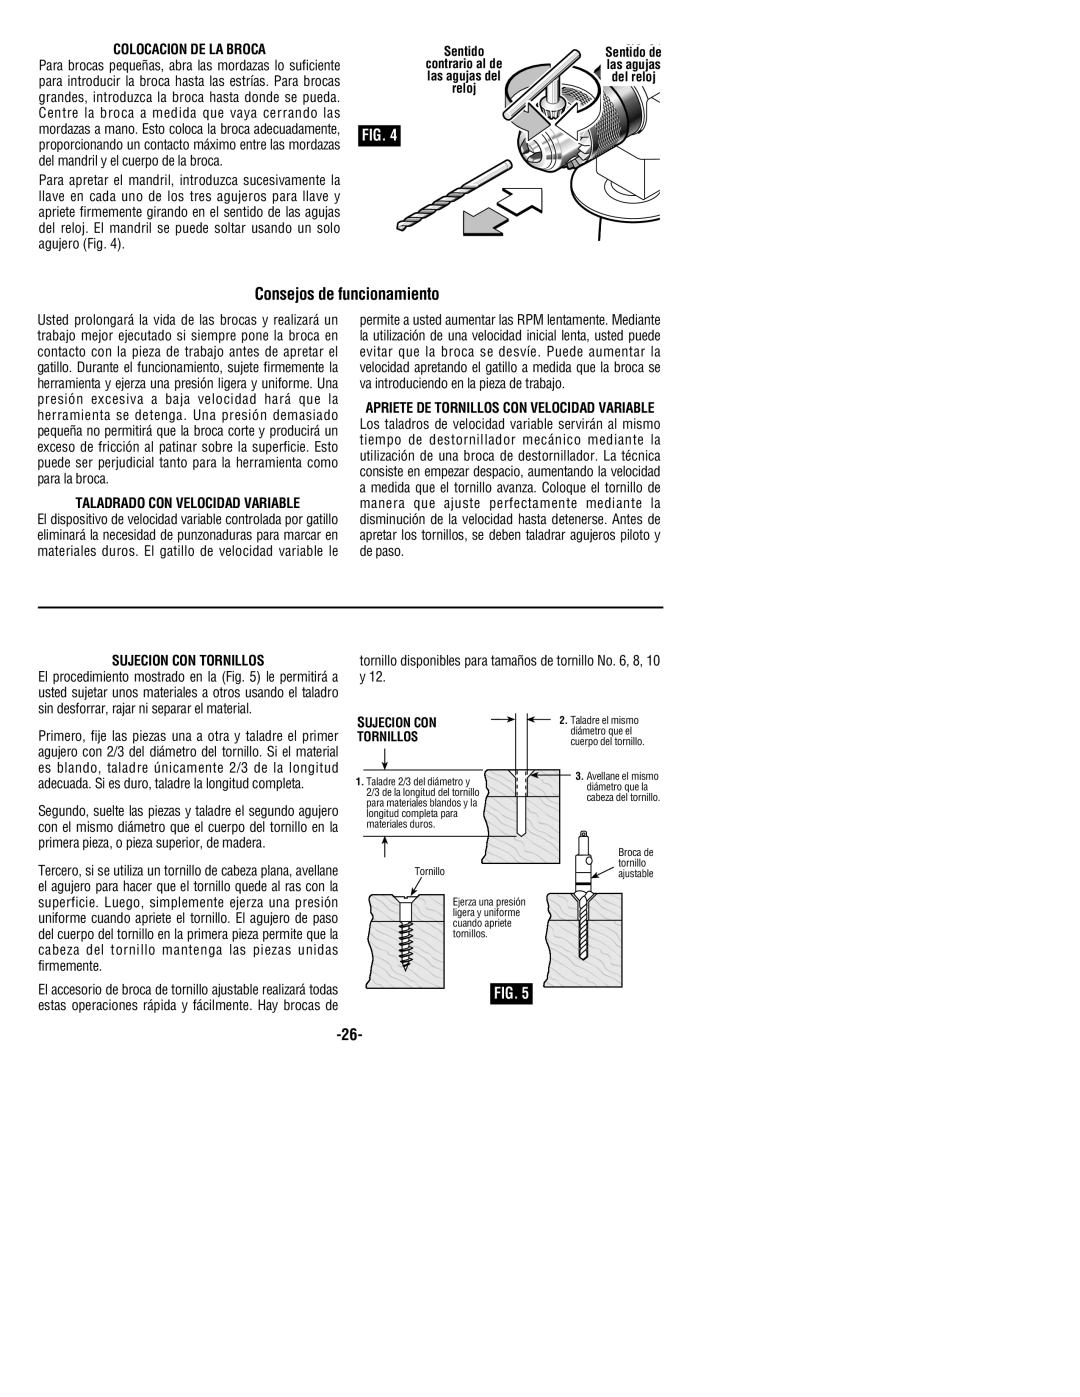 Bosch Power Tools 1199VSR manual Consejos de funcionamiento, Colocacion De La Broca, Taladrado Con Velocidad Variable 